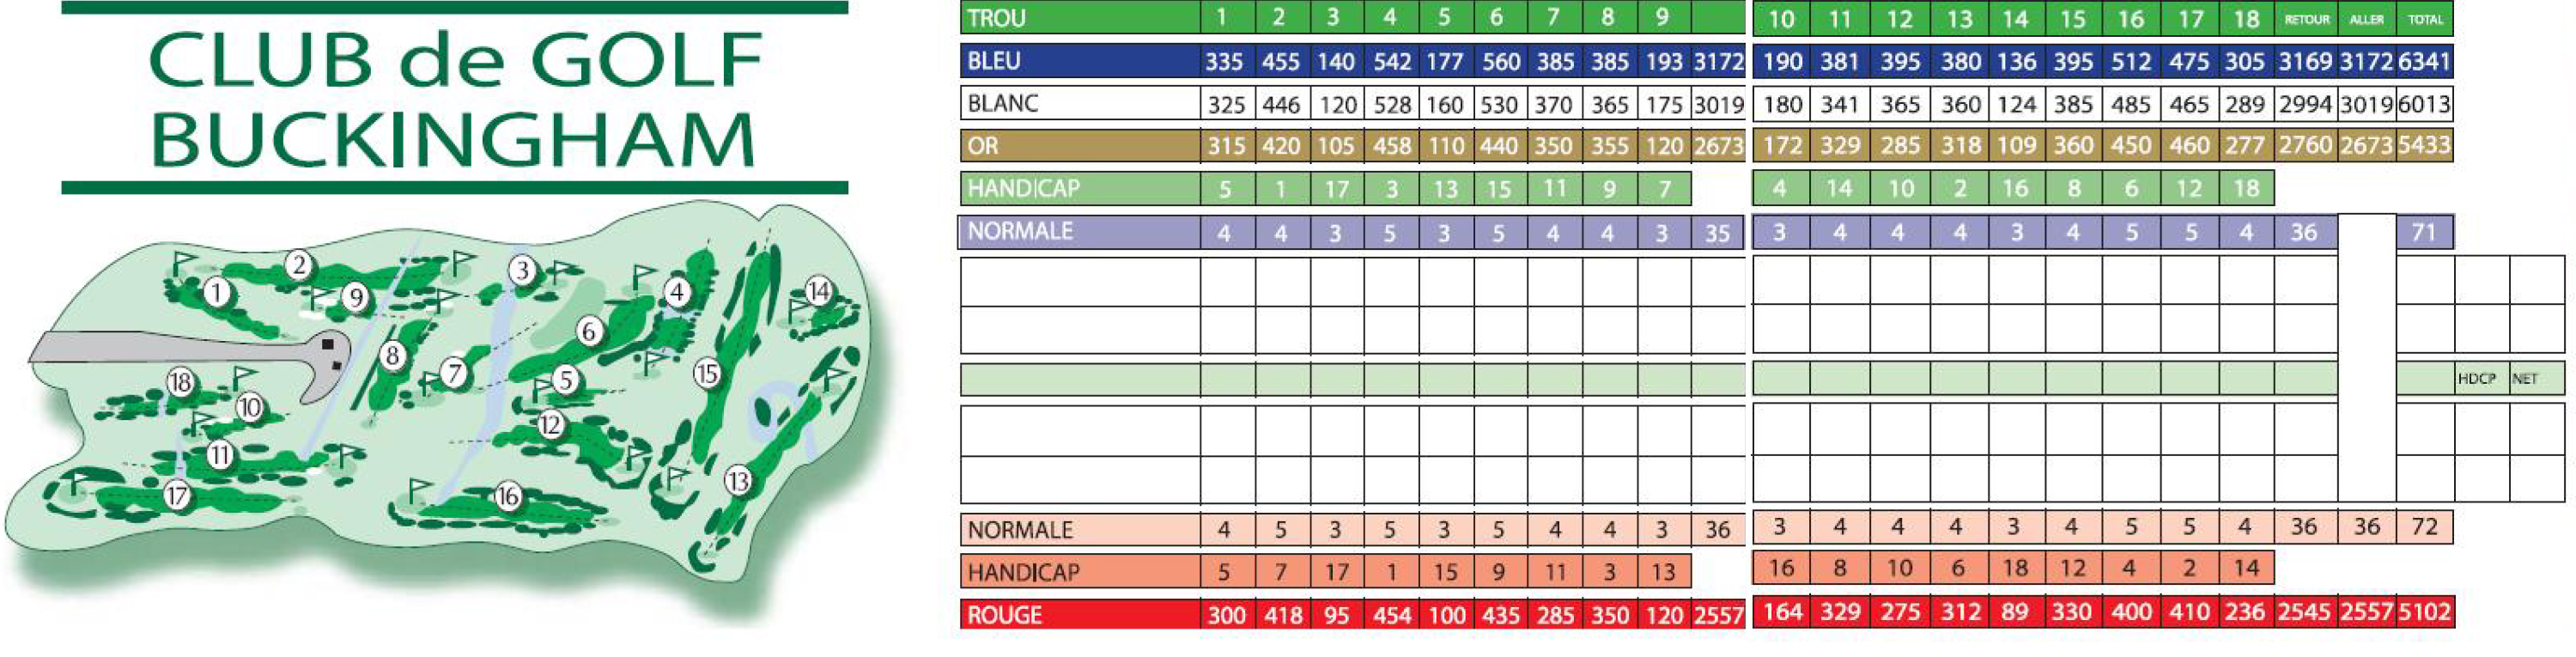 club de golf buckingham score card _ golf handicap software